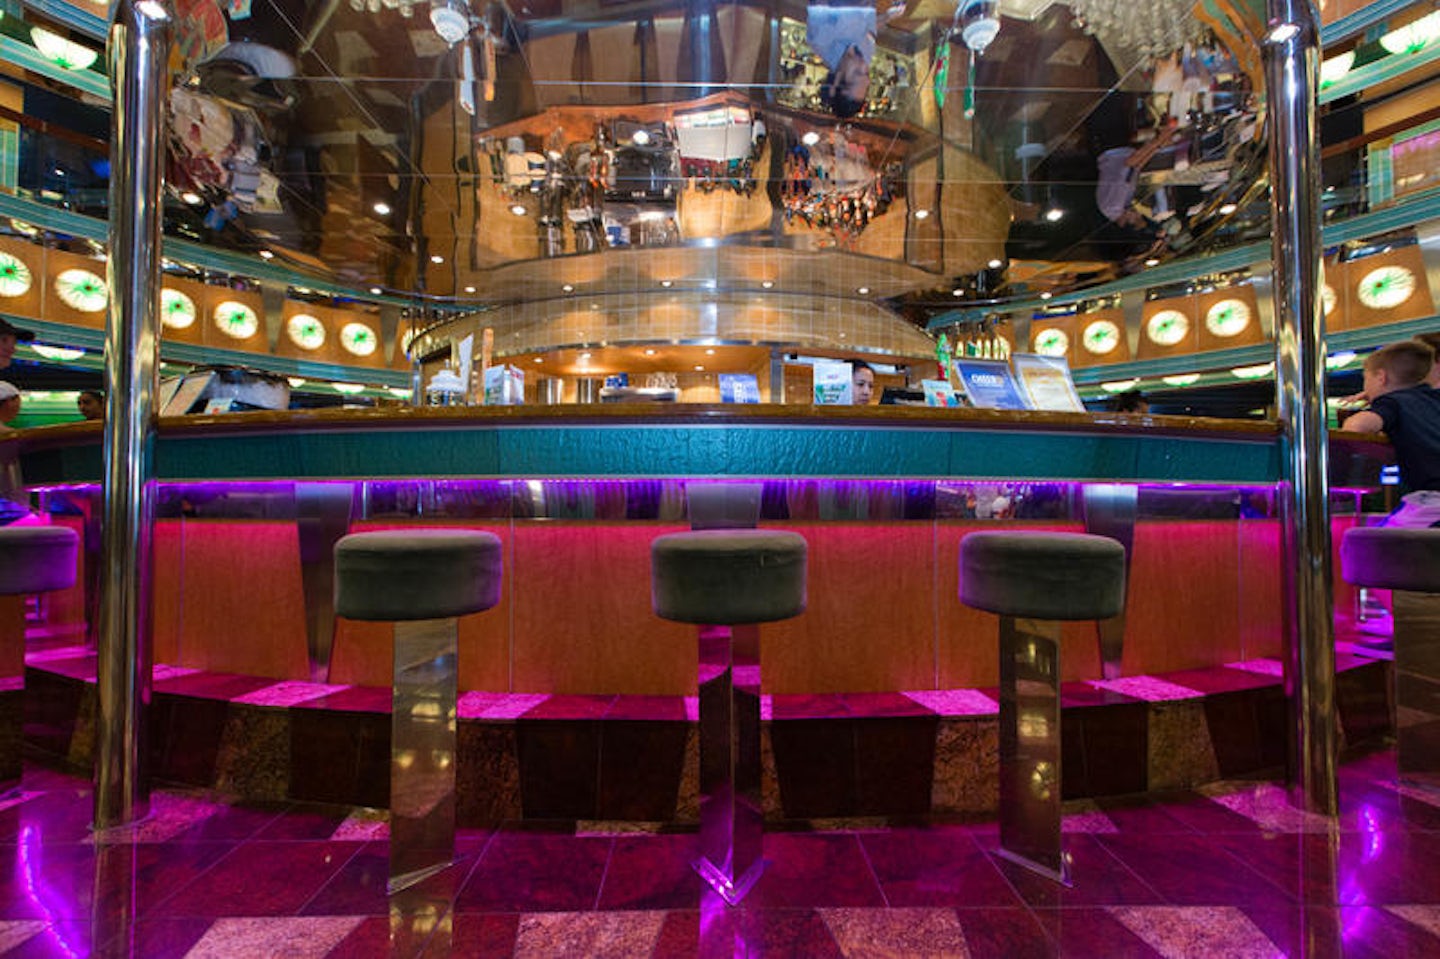 Magic Lobby Bar and Dance Floor on Carnival Magic